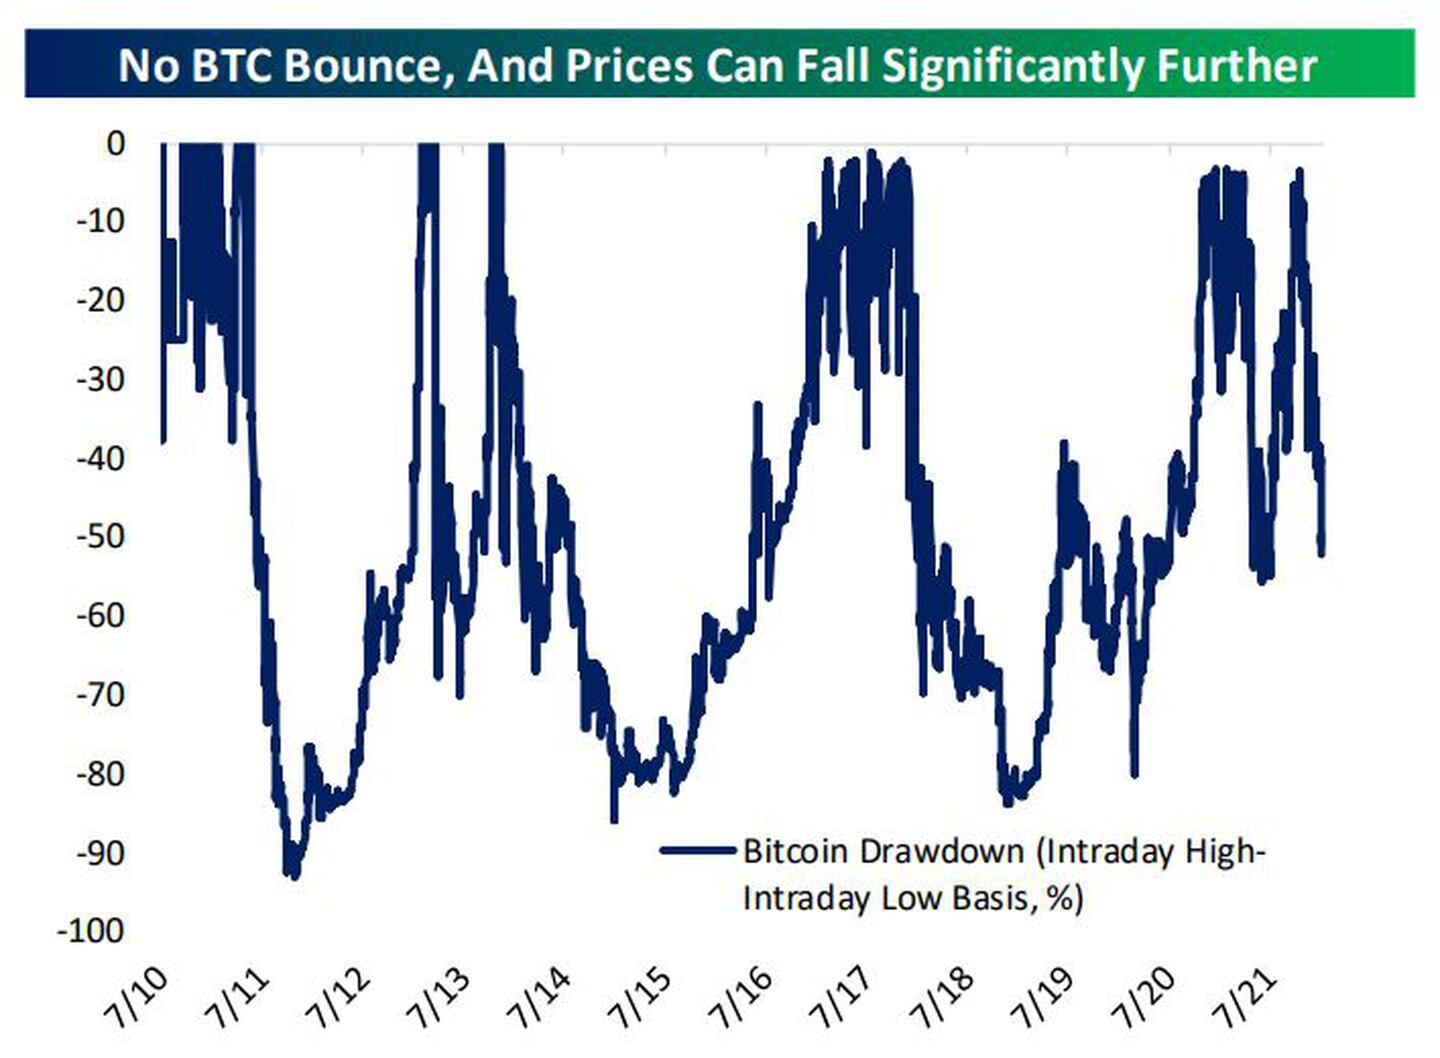 No hay rebote de BTC, y los precios pueden caer mucho más
Azul: Caída de Bitcoin (base intradiaria alta-baja, %)dfd